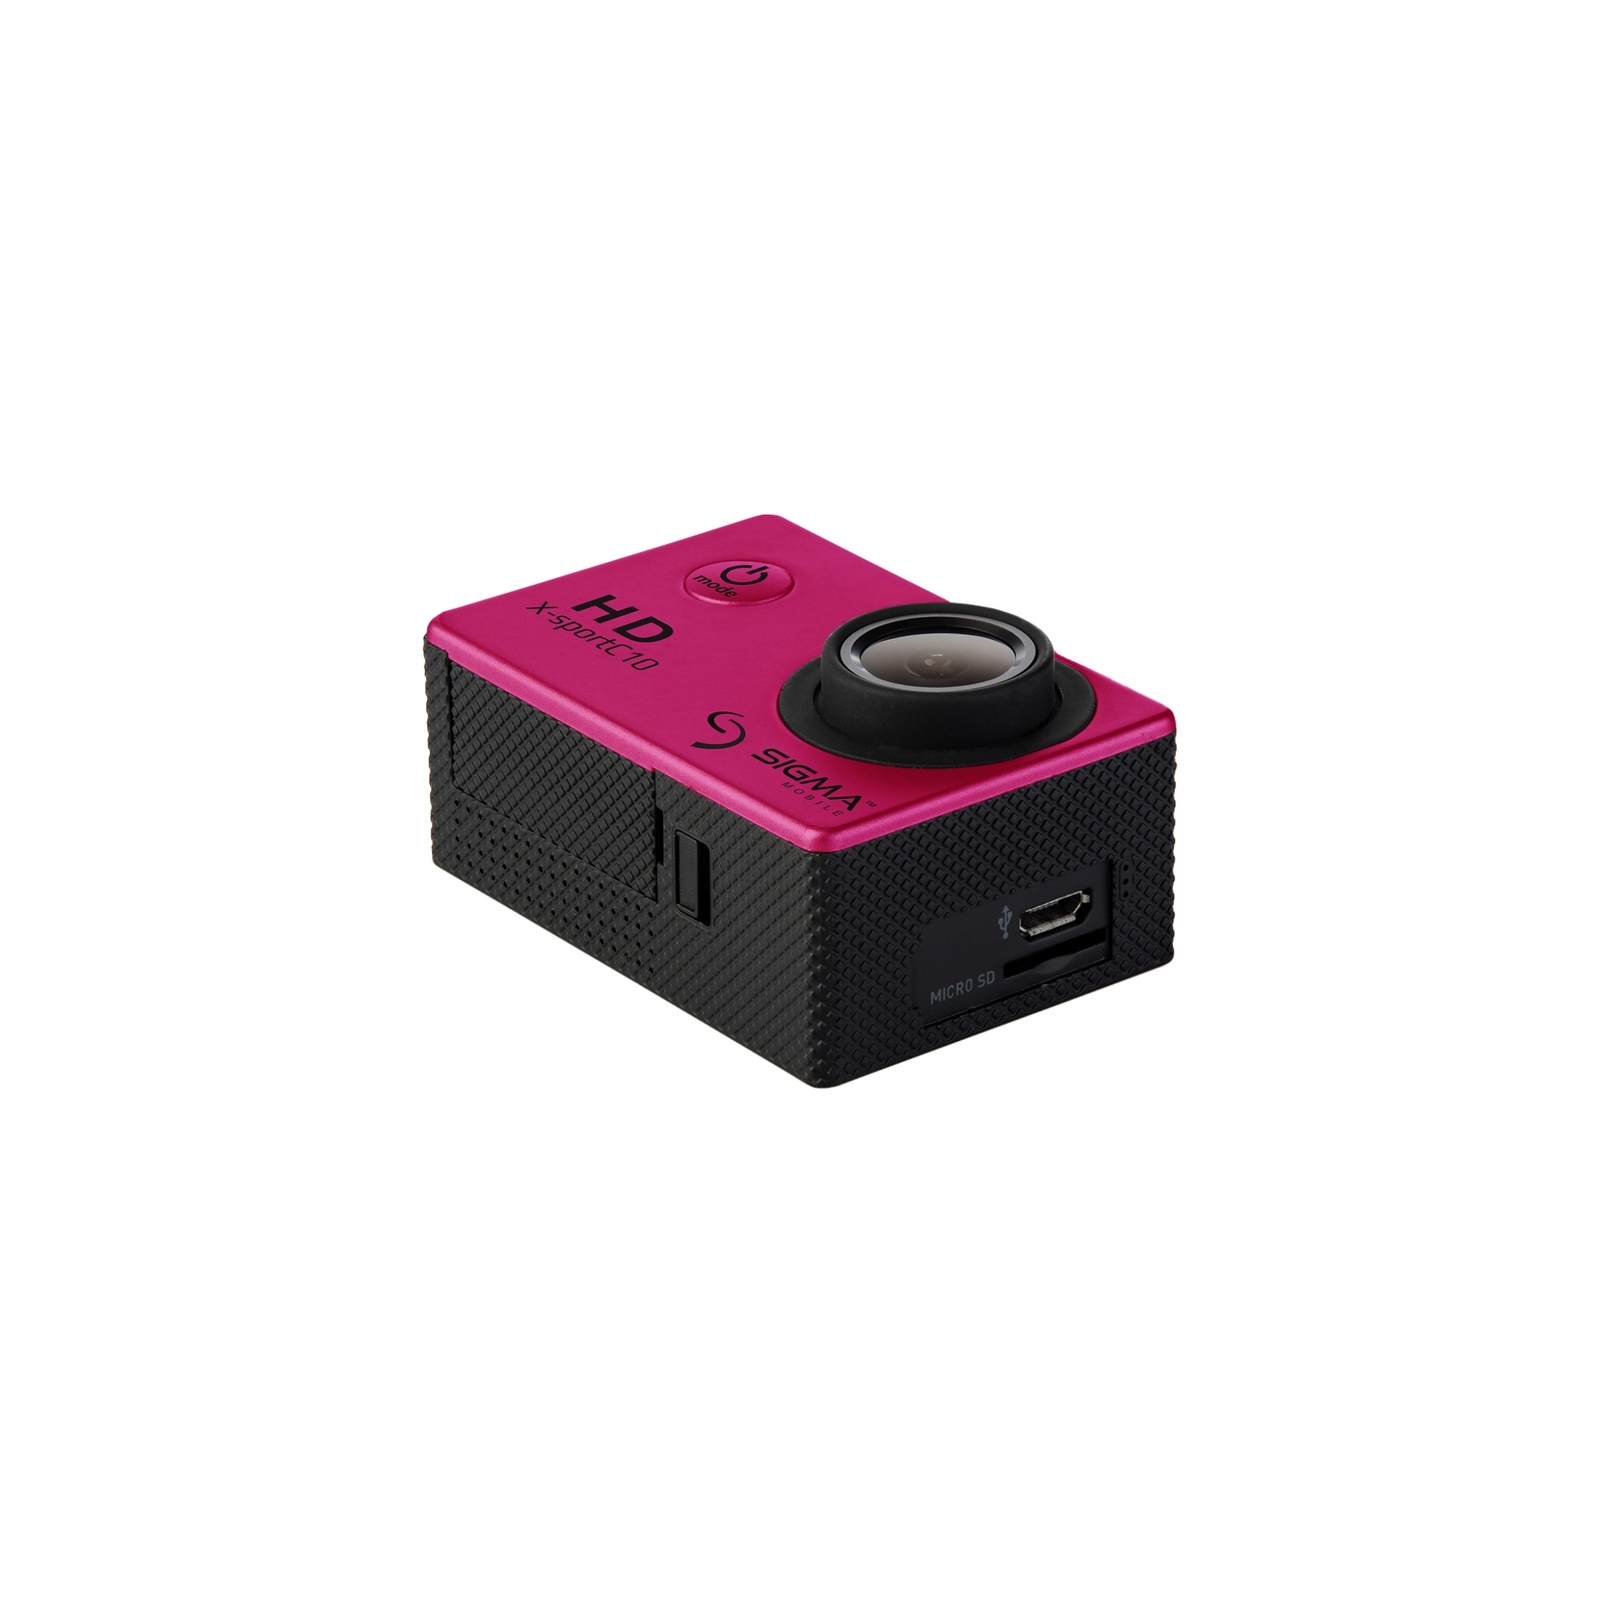 Экшн-камера Sigma Mobile X-sport C10 pink (4827798324240) изображение 3